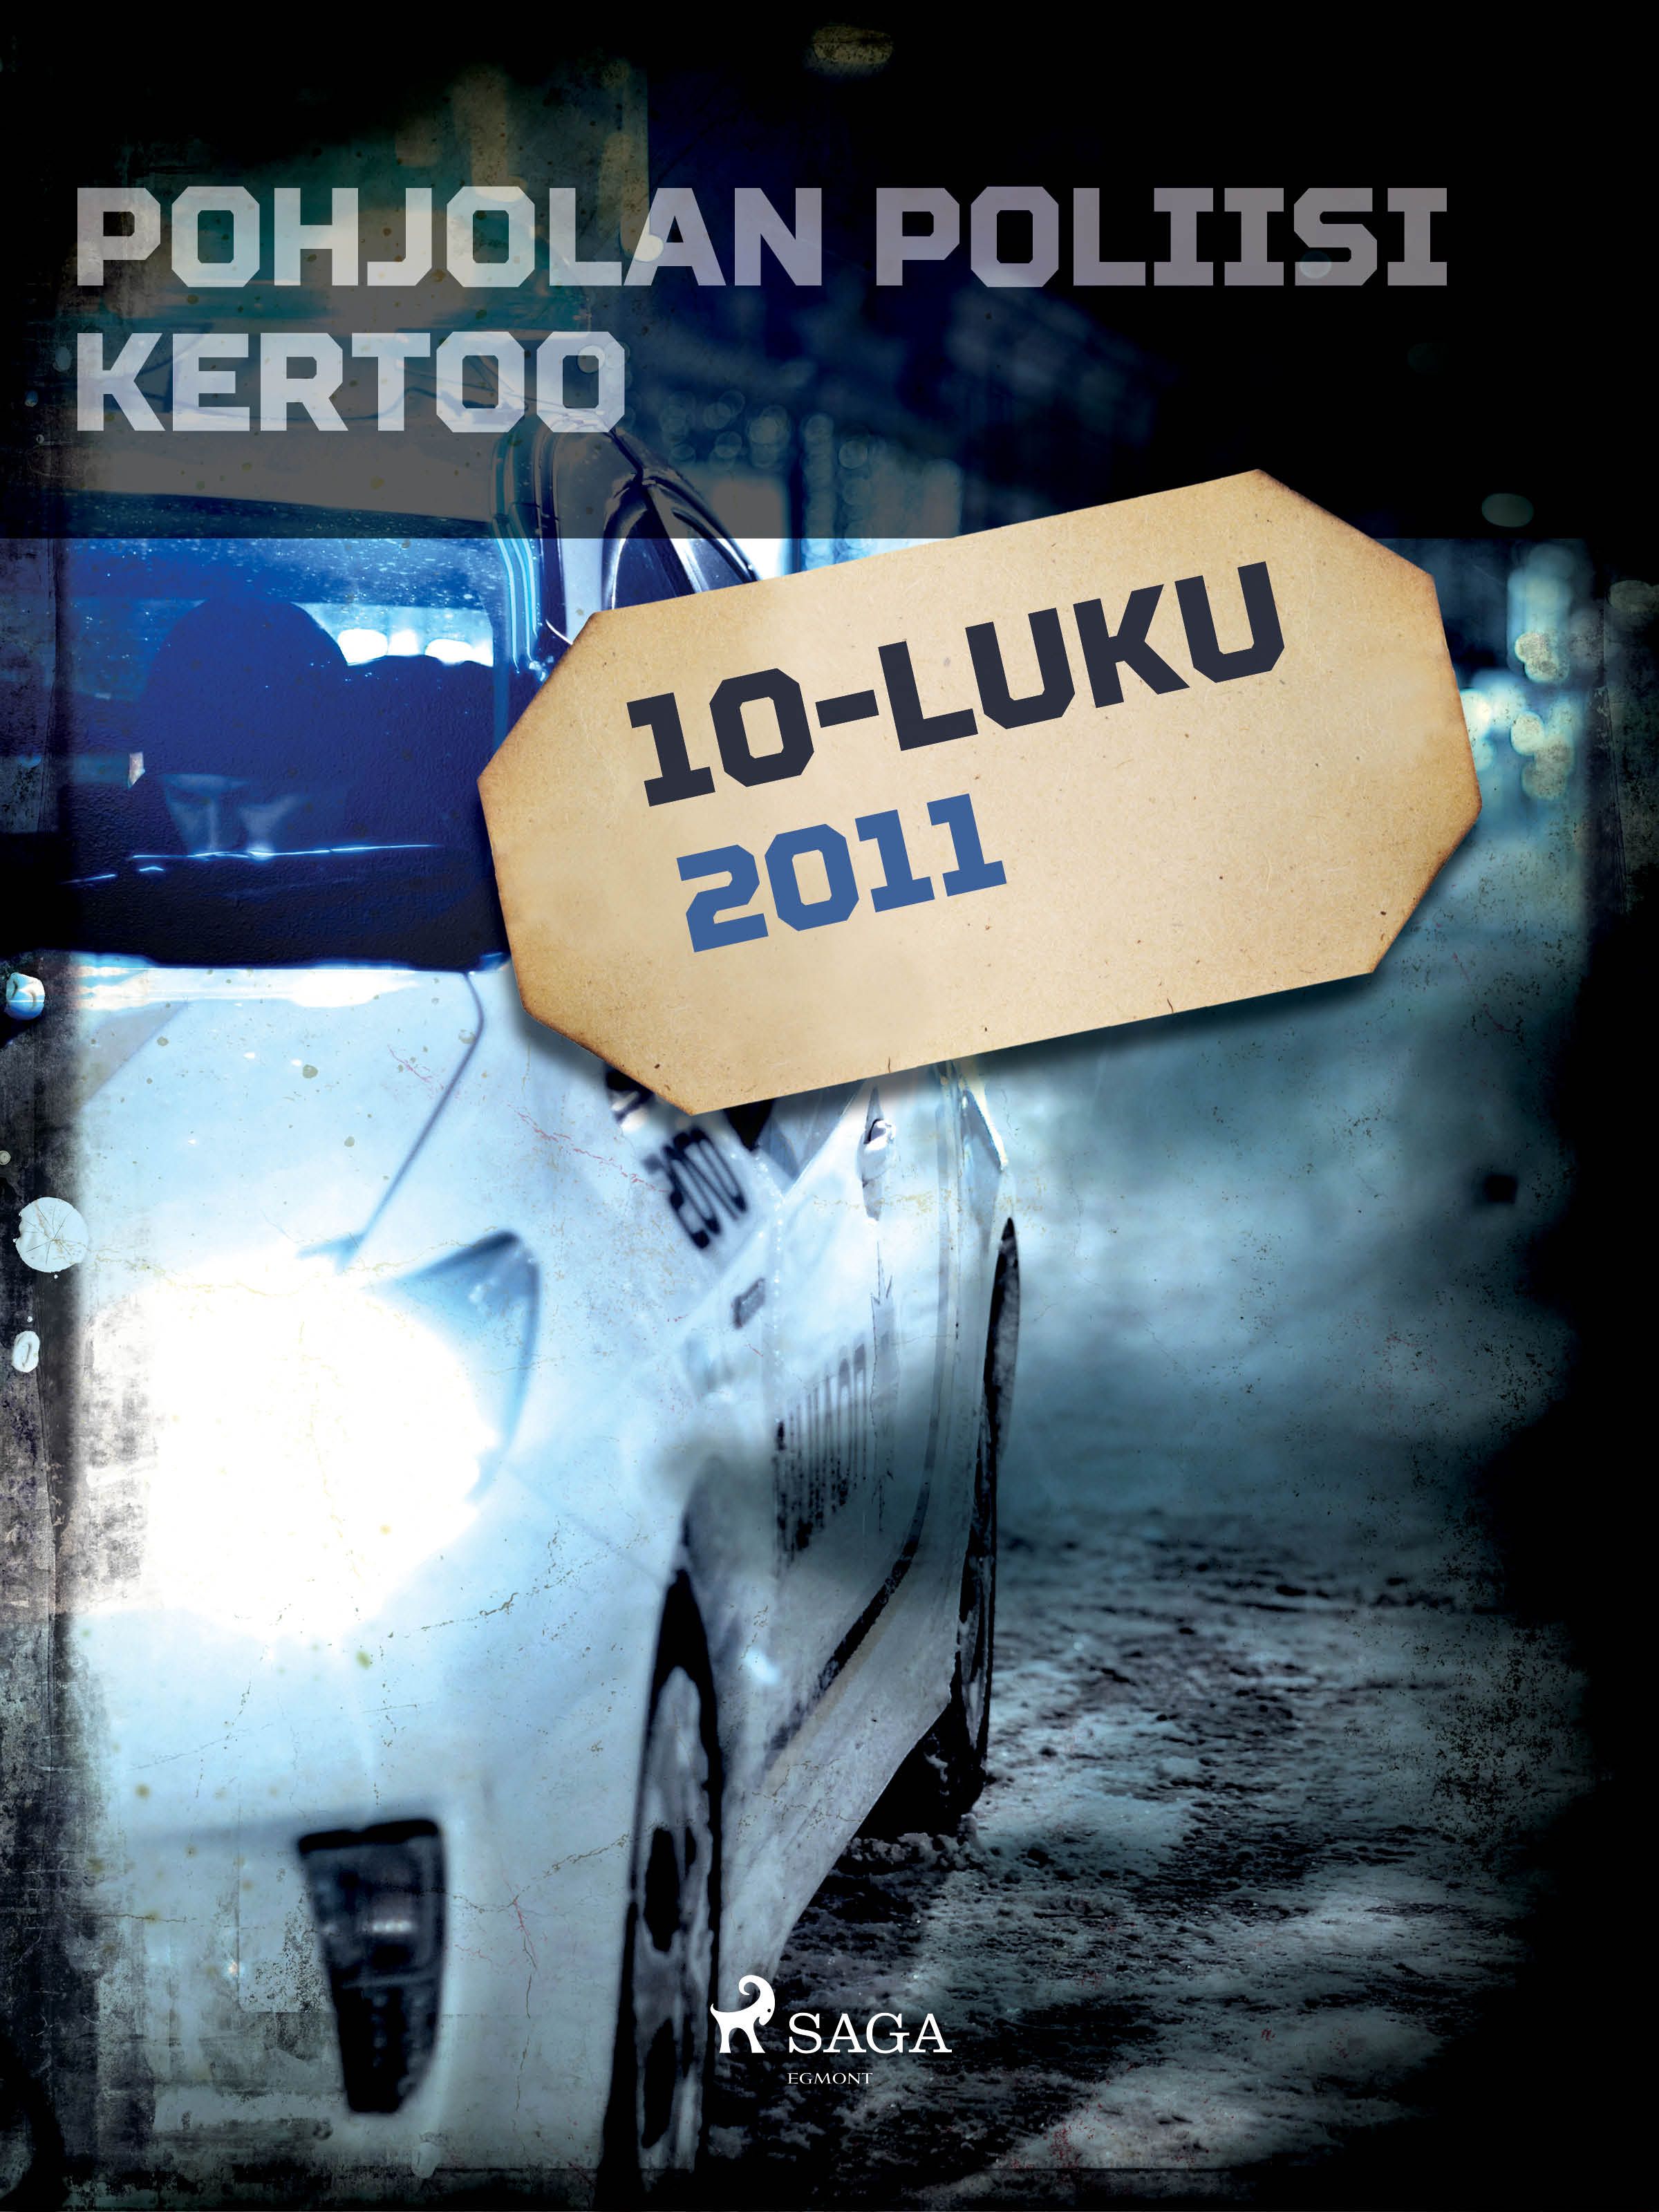 Pohjolan poliisi kertoo 2011, e-bok av Eri Tekijöitä